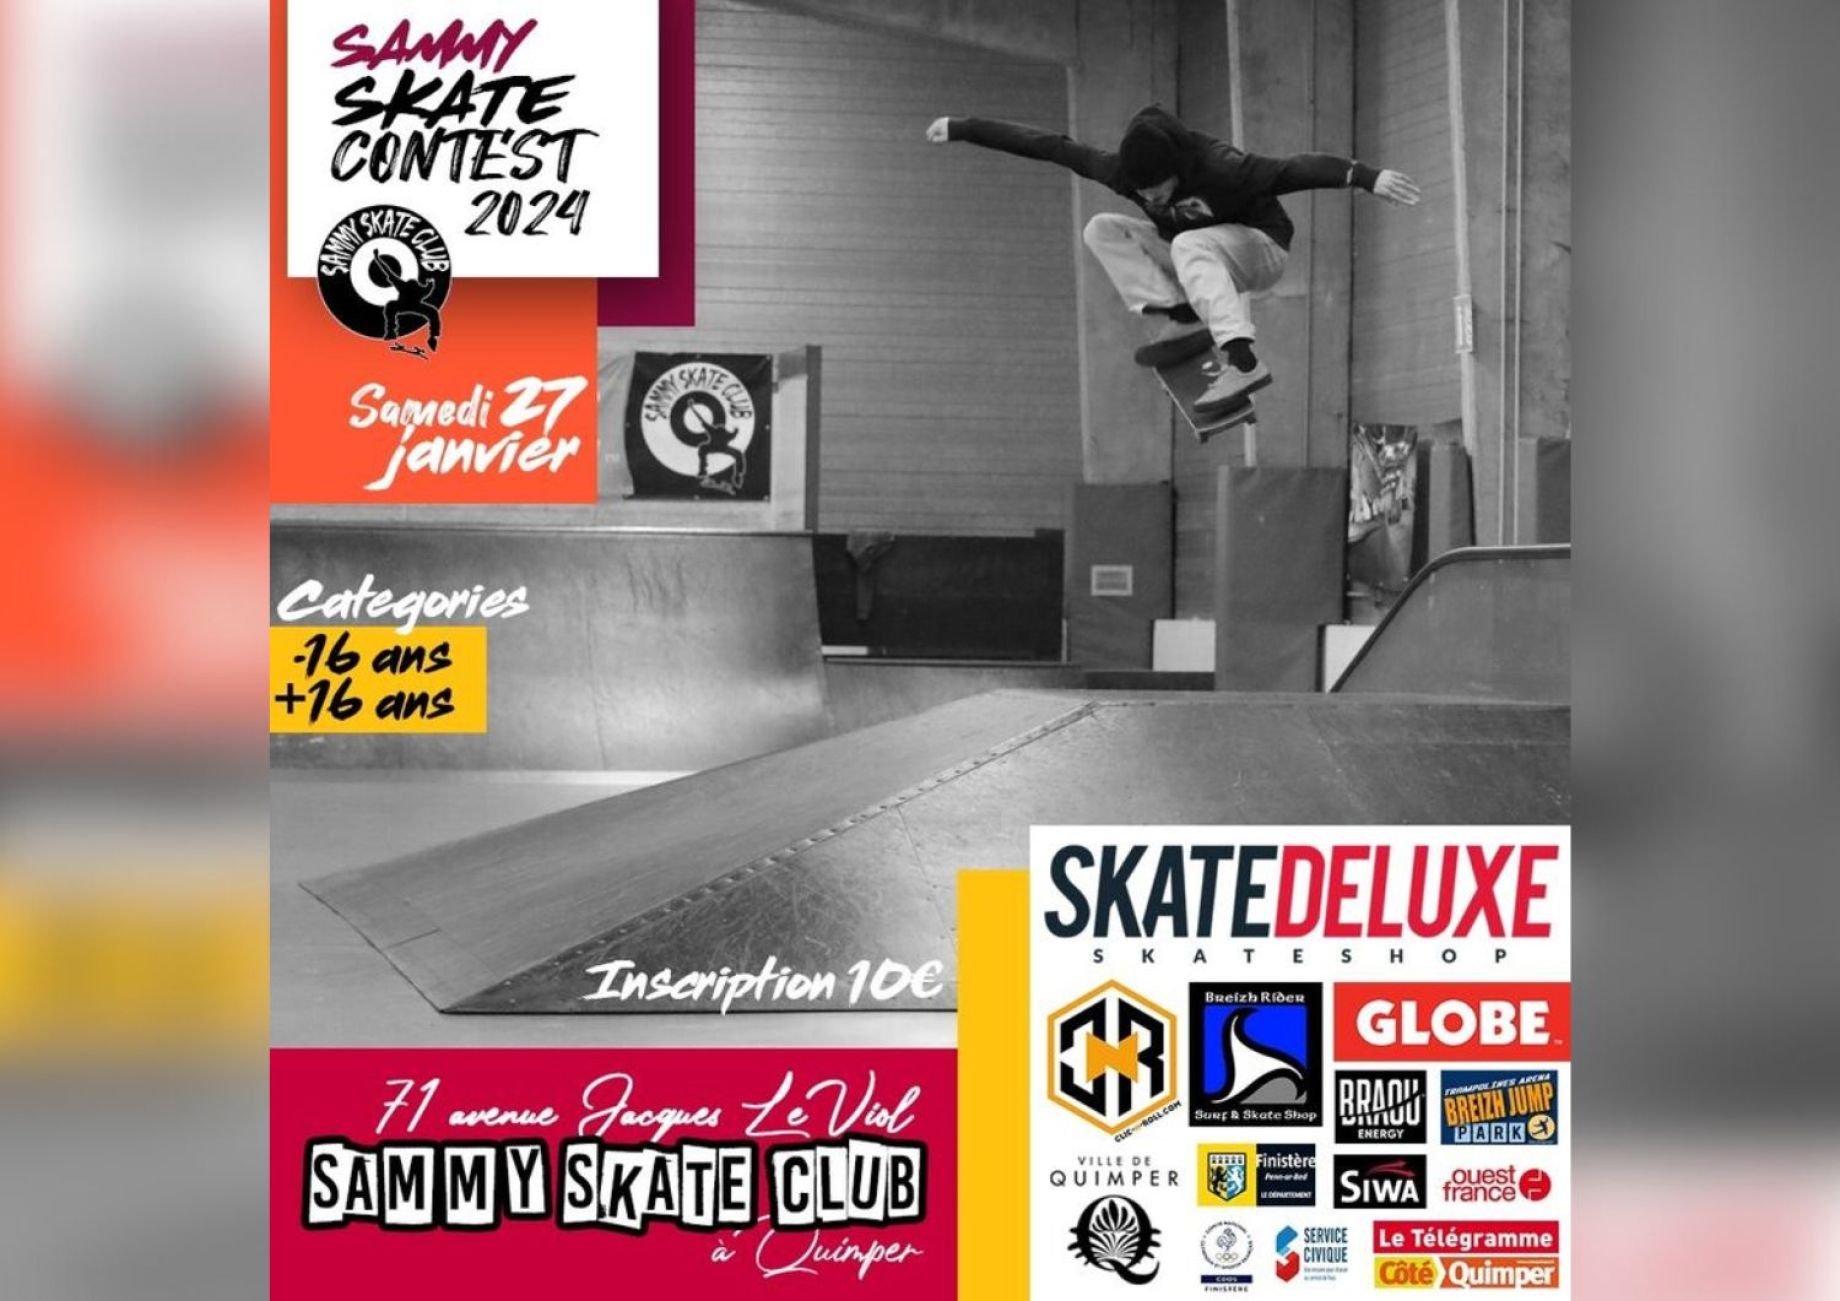 Sammy Skate Contest